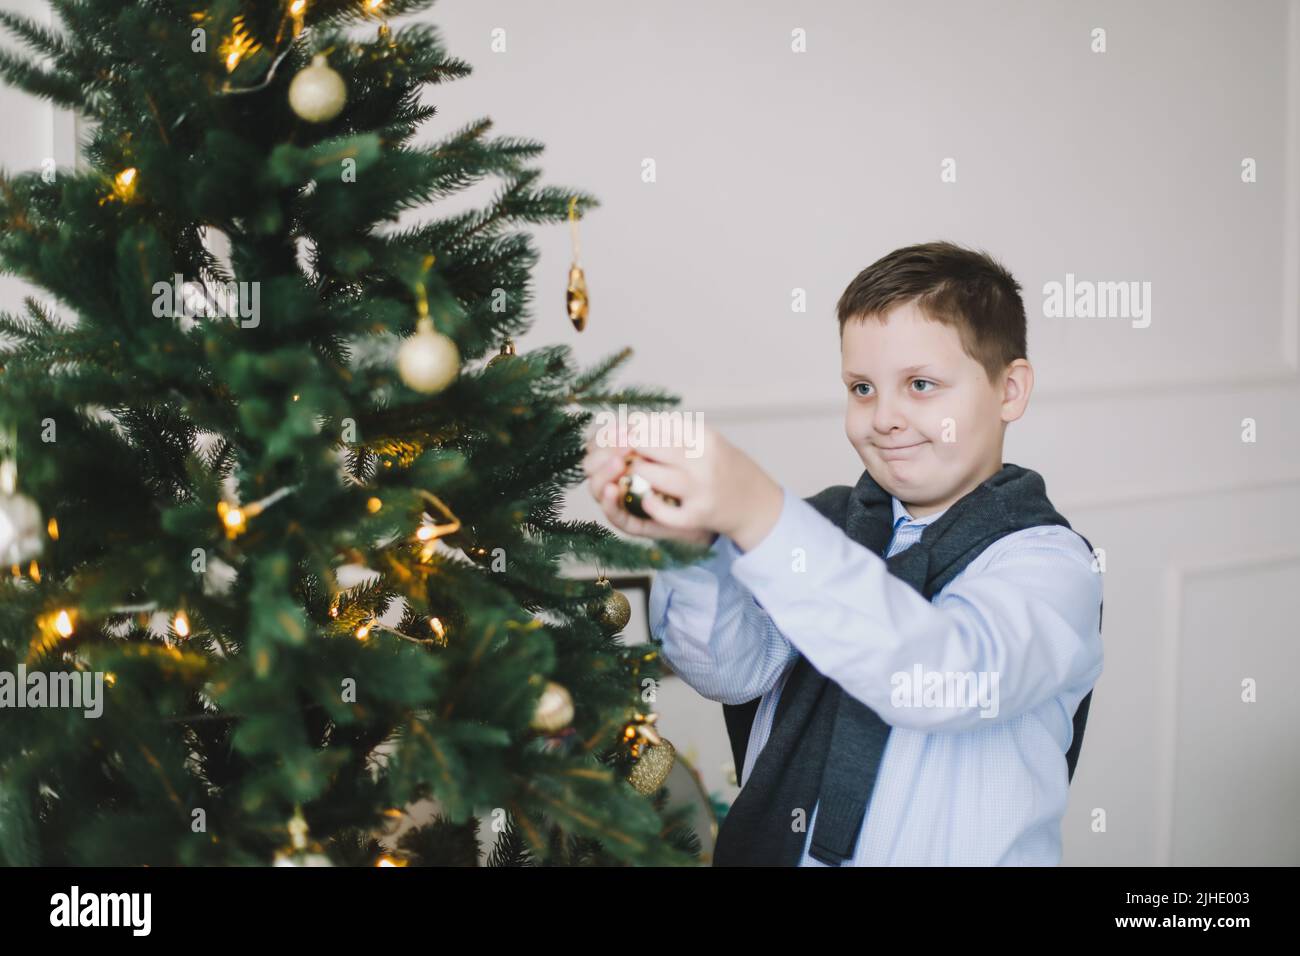 Lächelnder kaukasischer Junge, der Weihnachtsbaum in einer häuslichen Inneneinrichtung und festlicher Atmosphäre schmückt Stockfoto